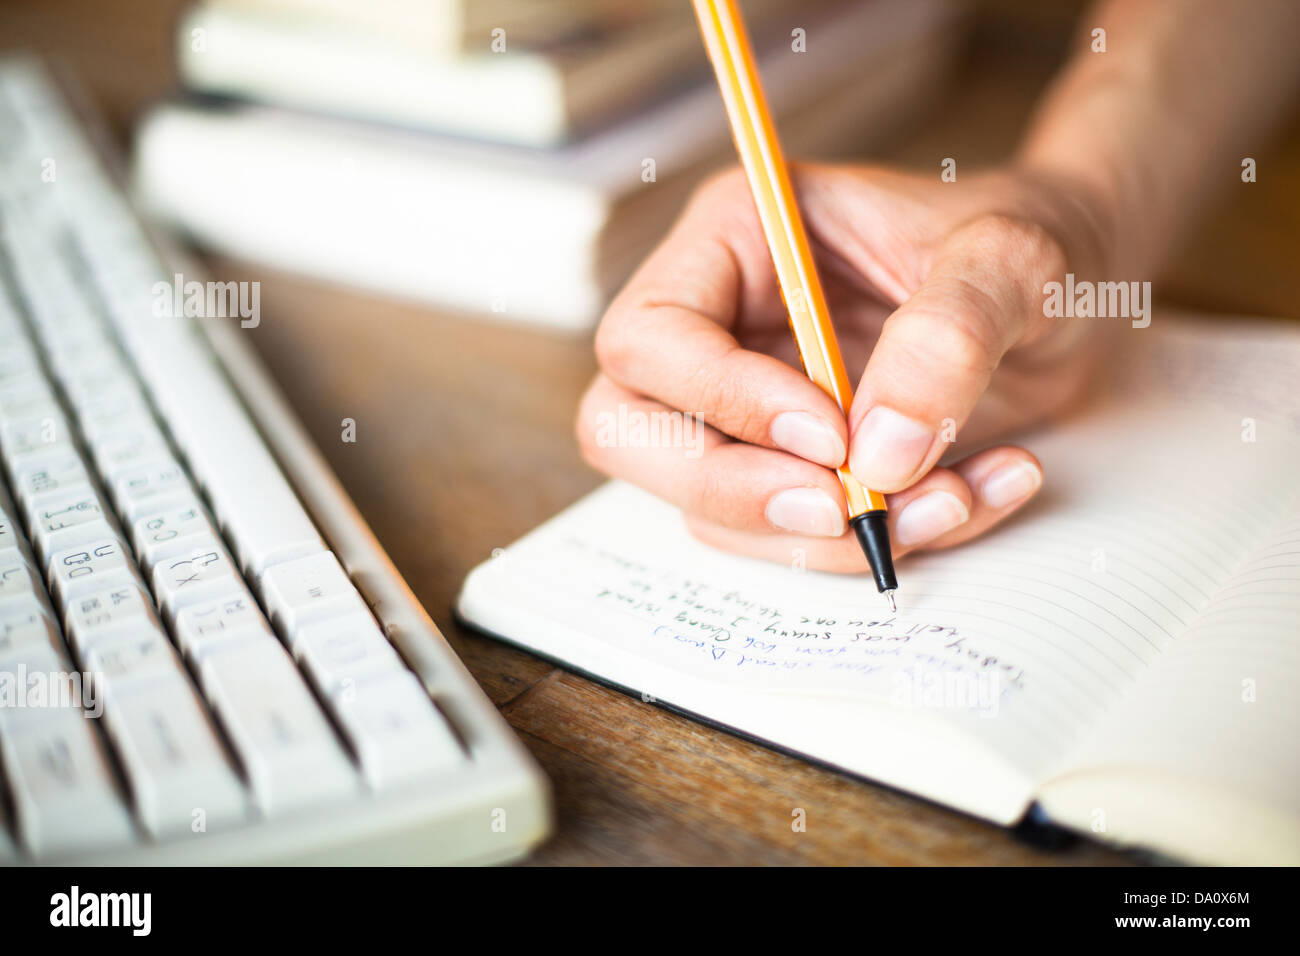 Donna mani scrive una penna in un notebook, la tastiera del computer in background. Foto Stock